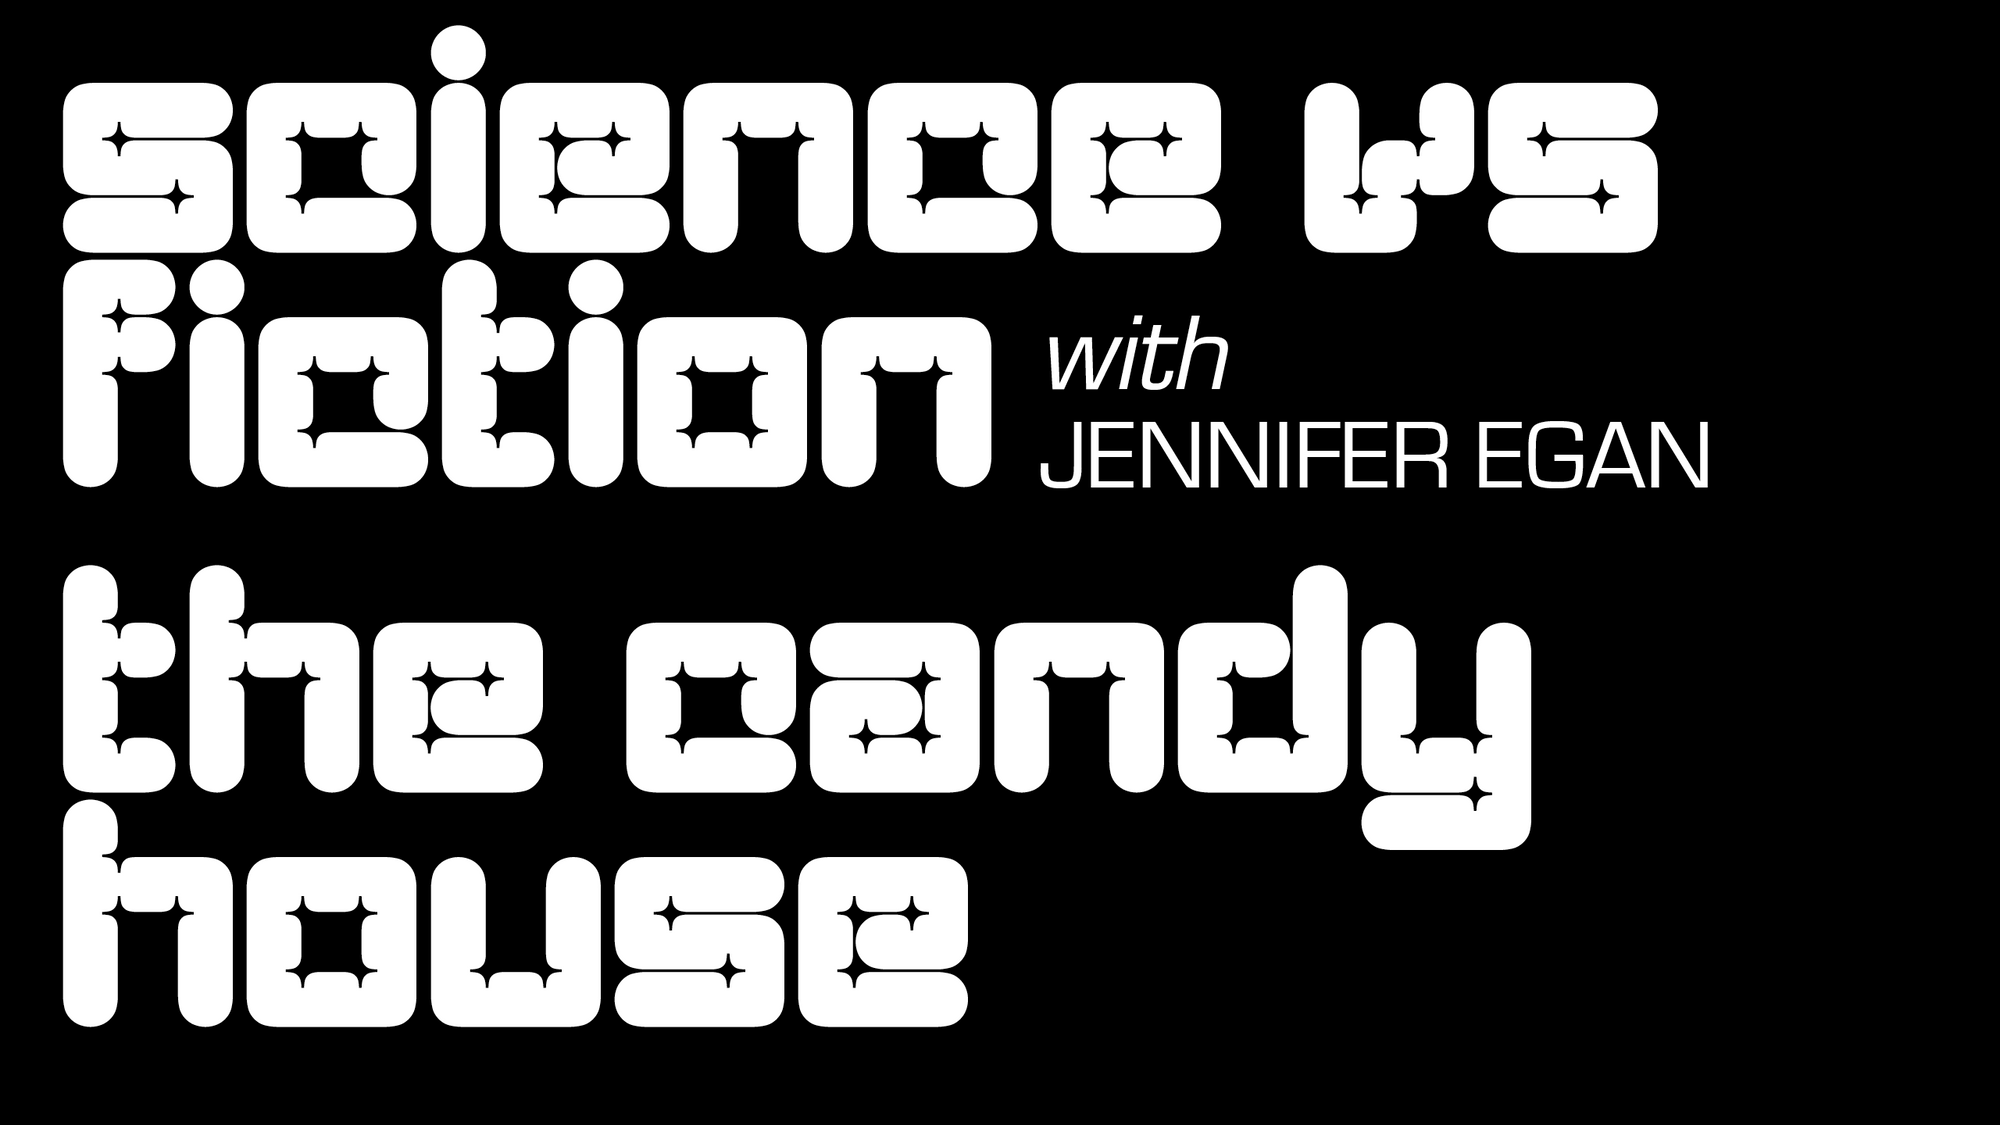 Science vs Fiction: Jennifer Egan on The Candy House